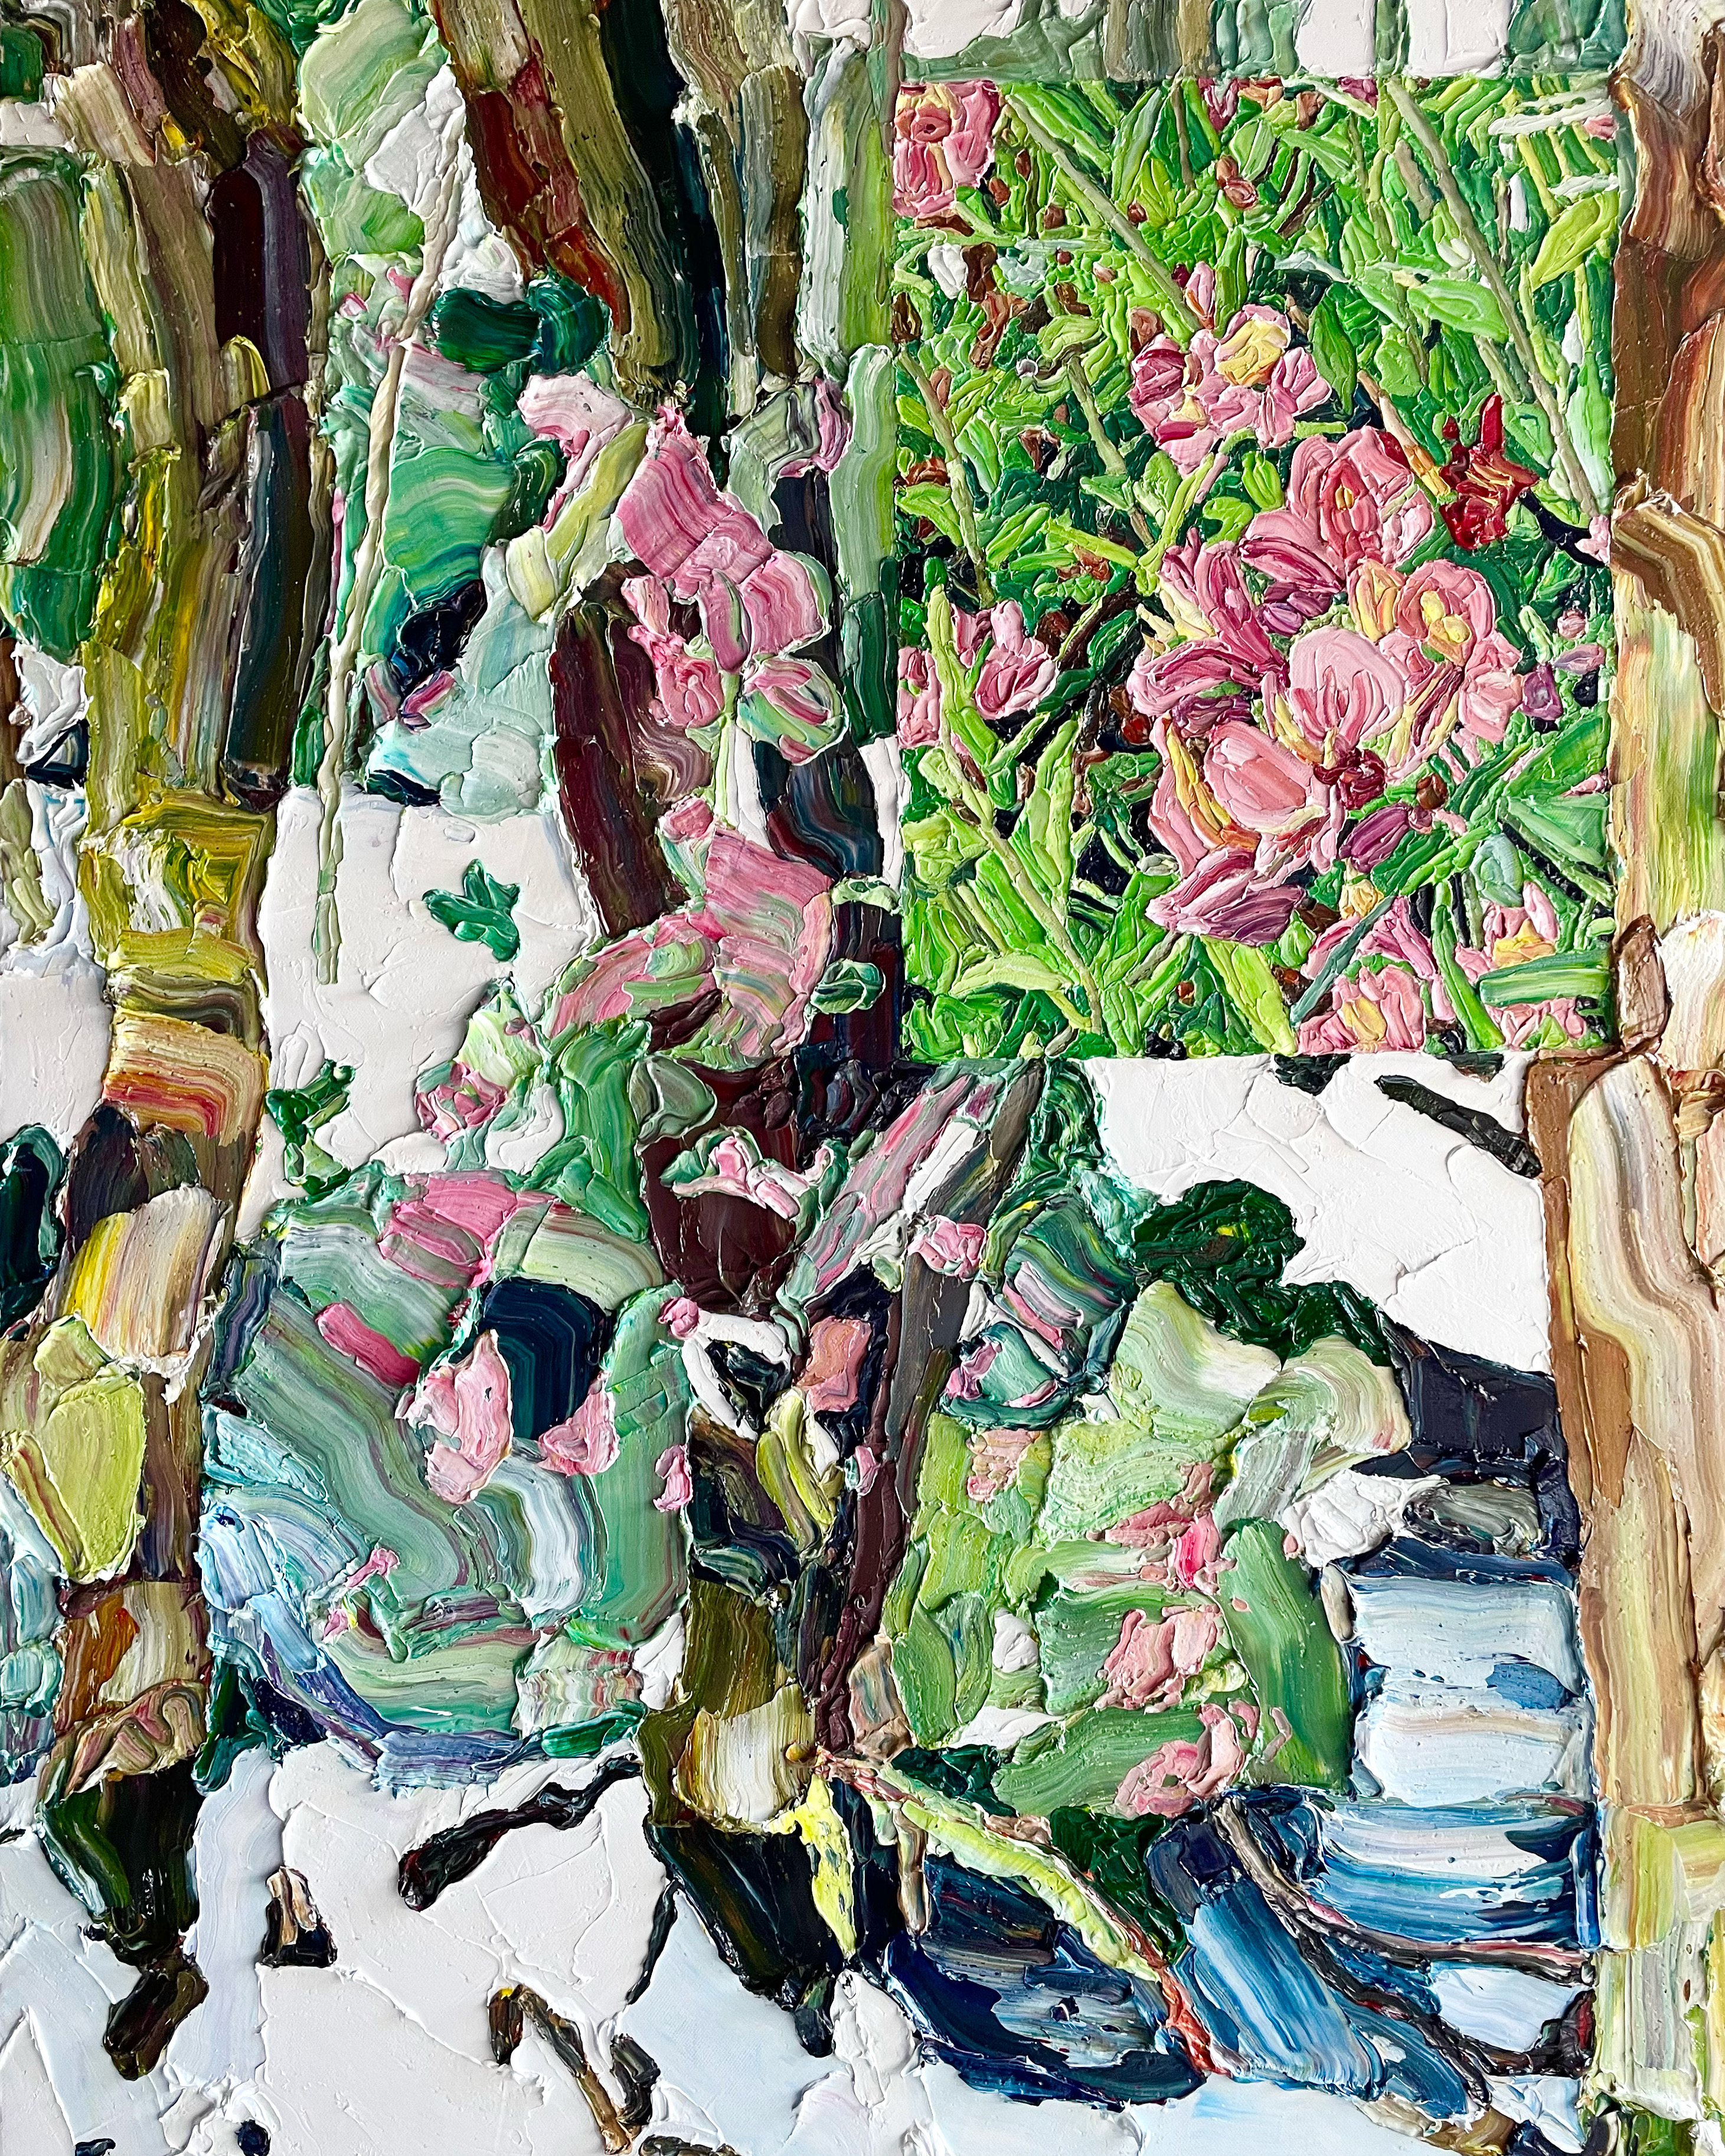 Melting Garden by Ashlee Becks | Lethbridge Landscape Prize 2022 Finalists | Lethbridge Gallery